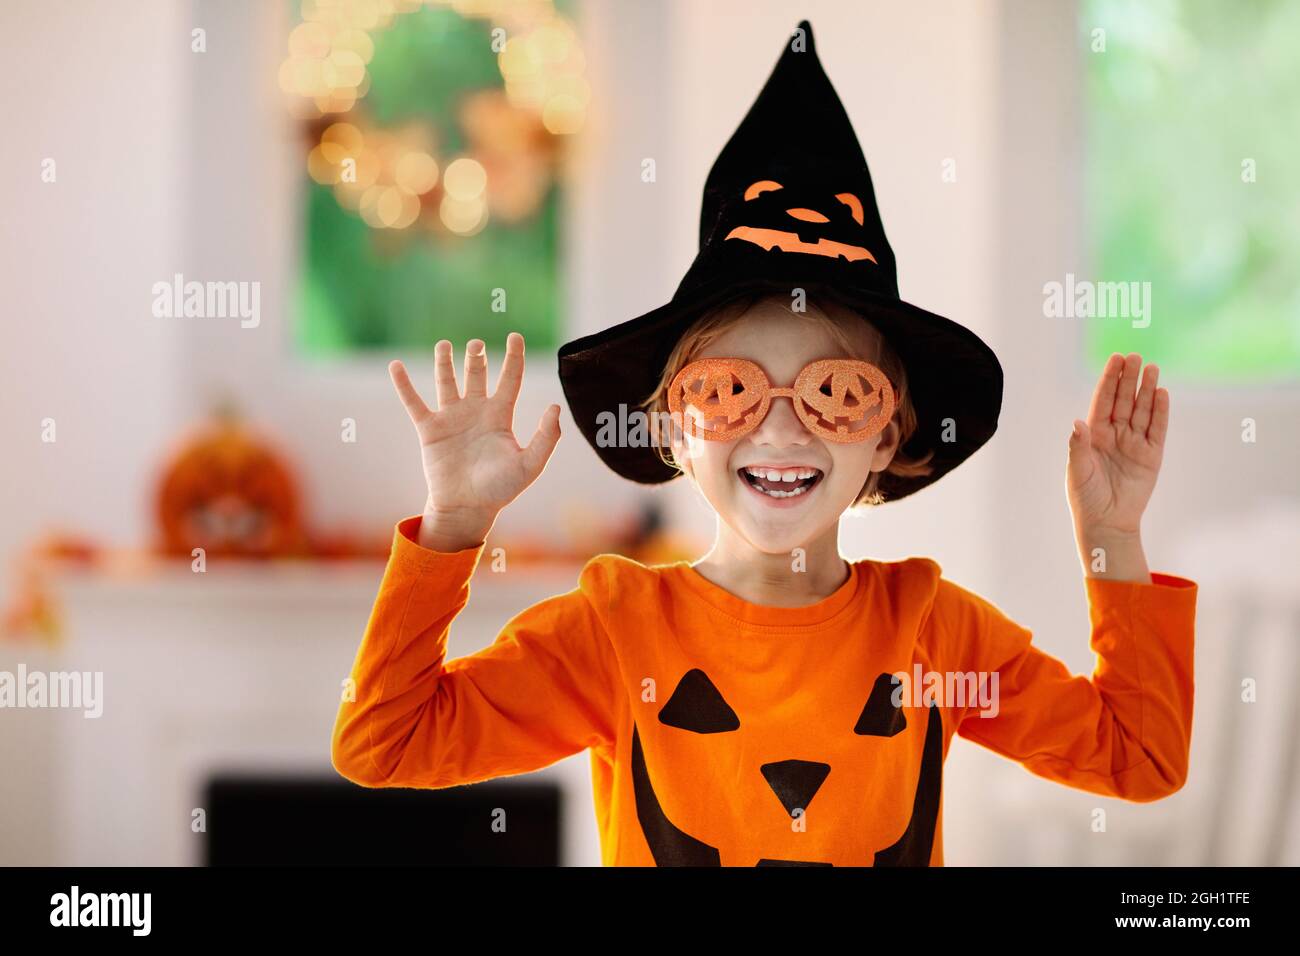 Los 21 disfraces de Halloween más adorables para los más pequeños de la casa